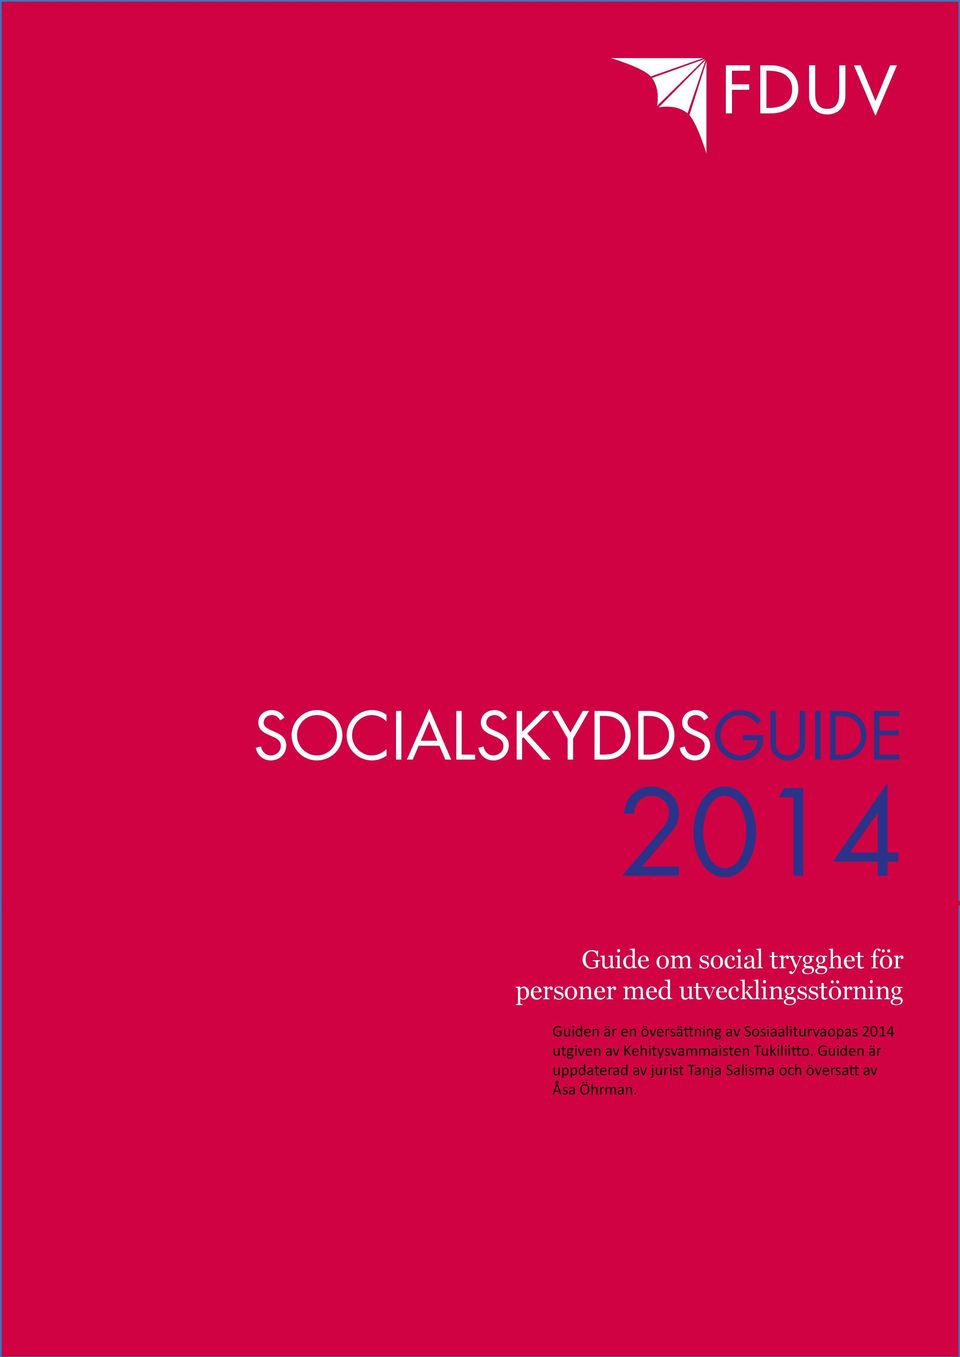 Sosiaaliturvaopas 2014 utgiven av Kehitysvammaisten Tukiliitto.